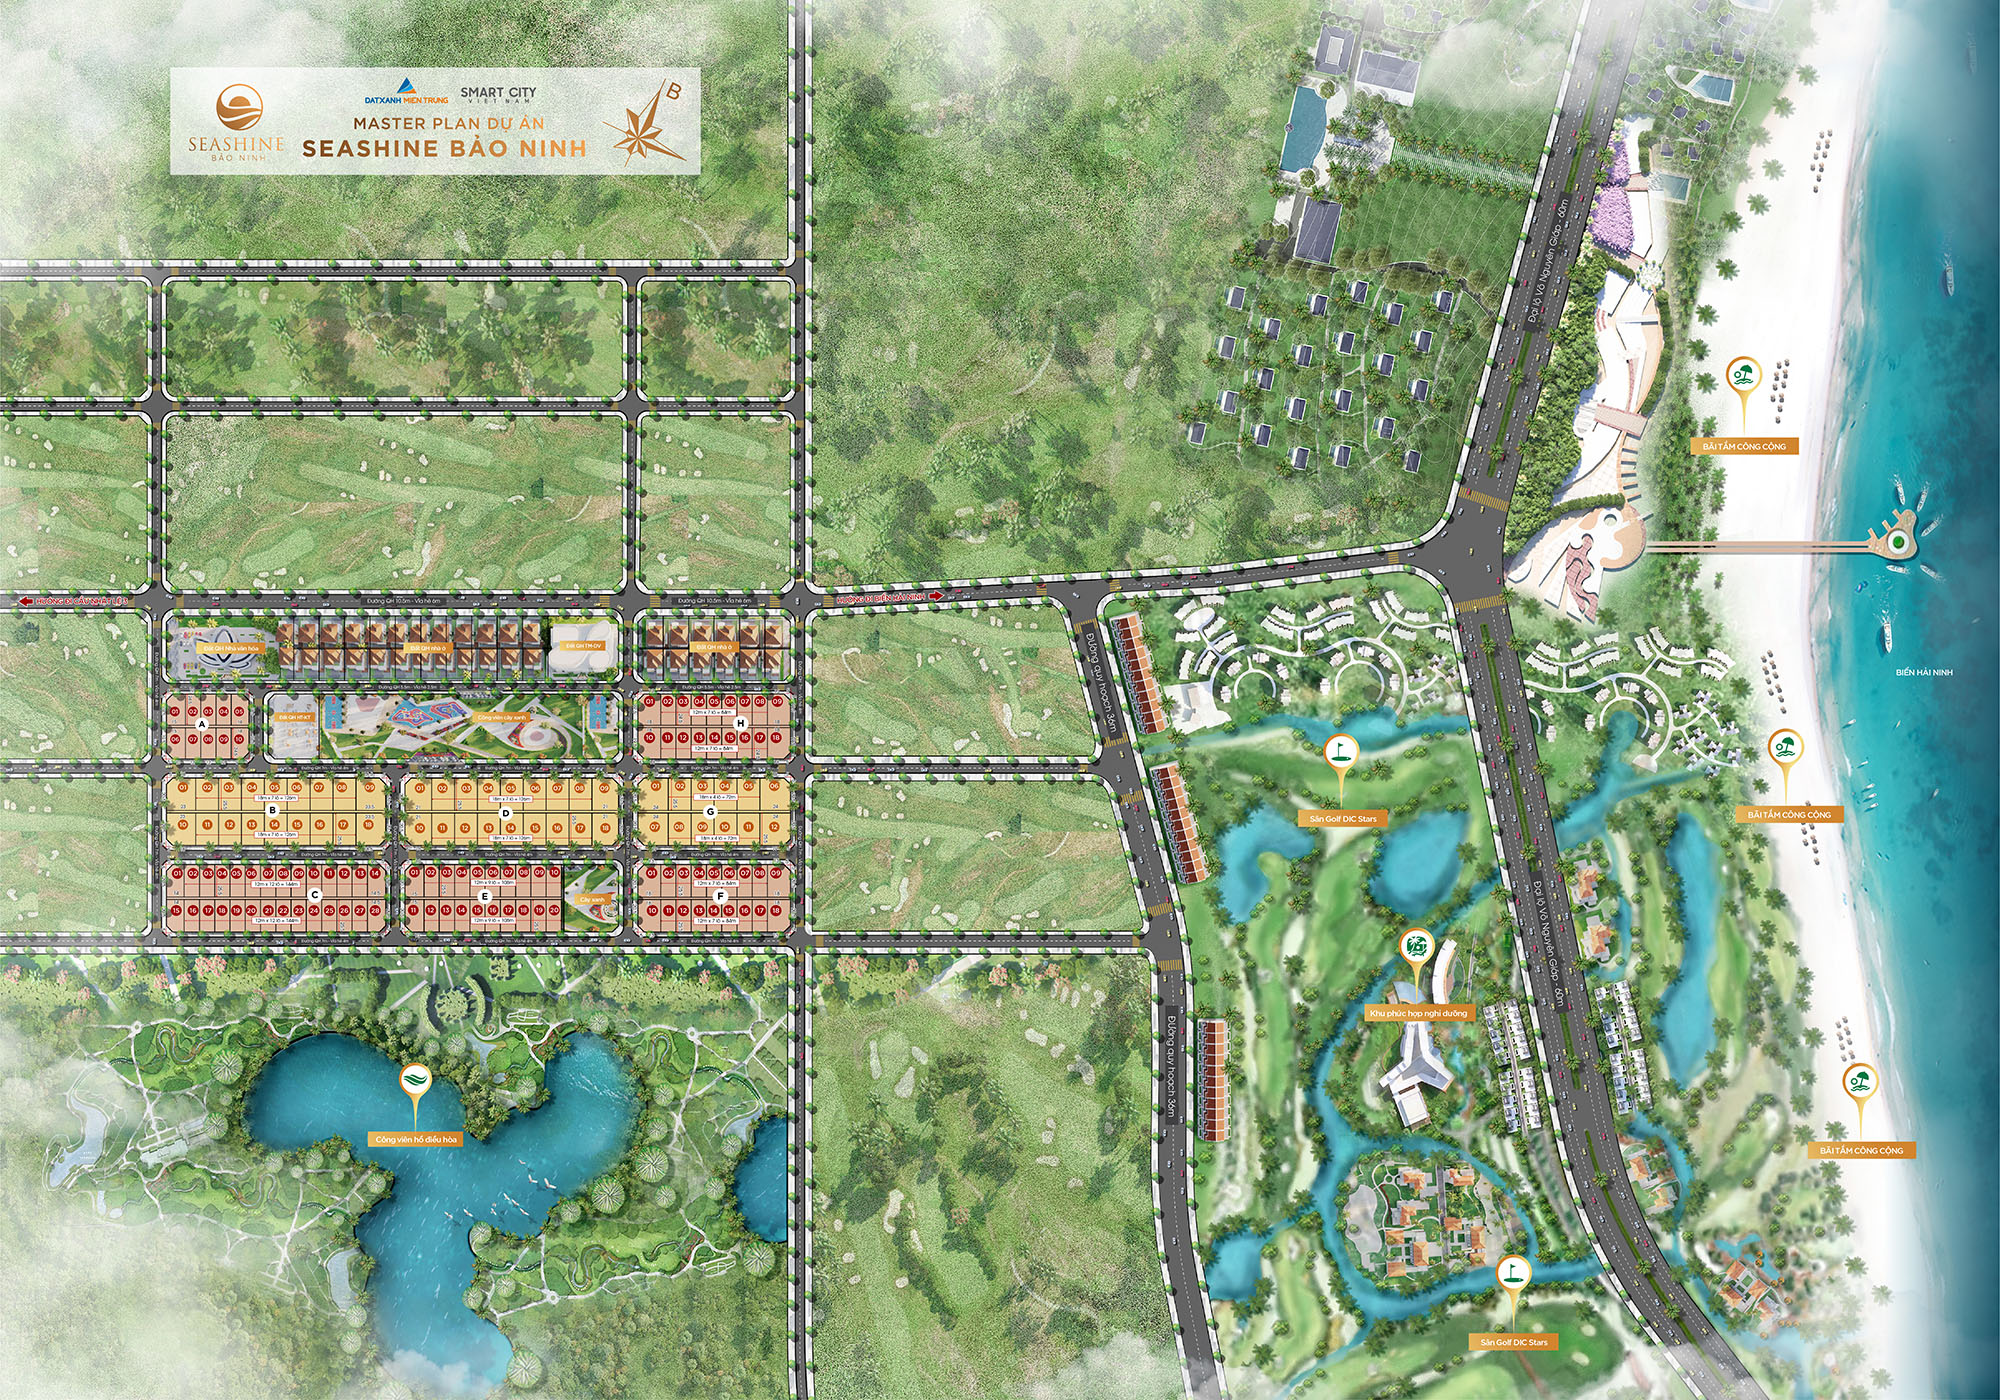 Master plan dự án đất nền Seashine Bảo Ninh tỉnh Quảng BÌnh